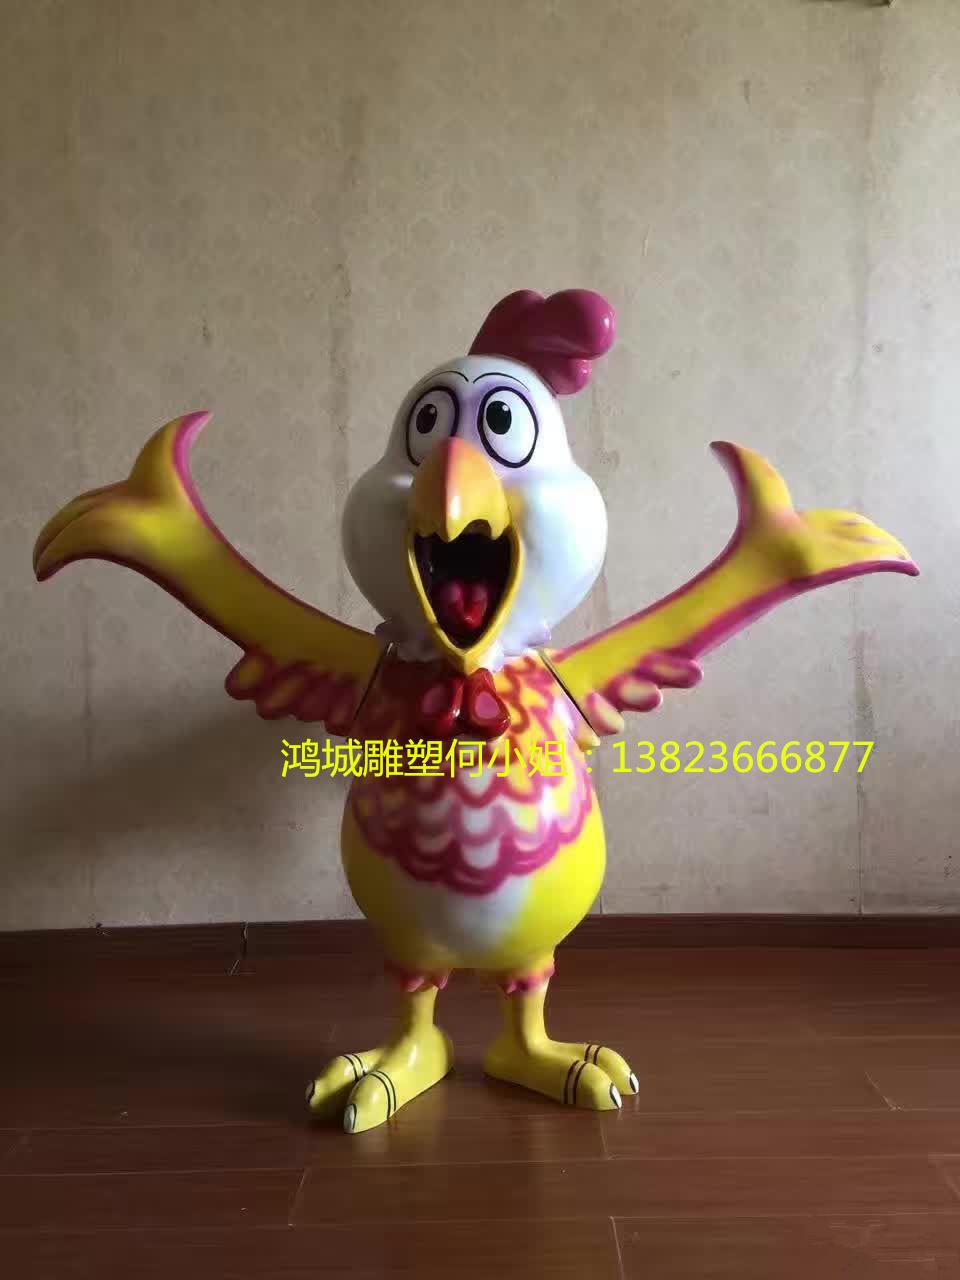 深圳市鸡年玻璃钢卡通大公鸡雕塑厂家厂家直销鸡年玻璃钢卡通大公鸡雕塑